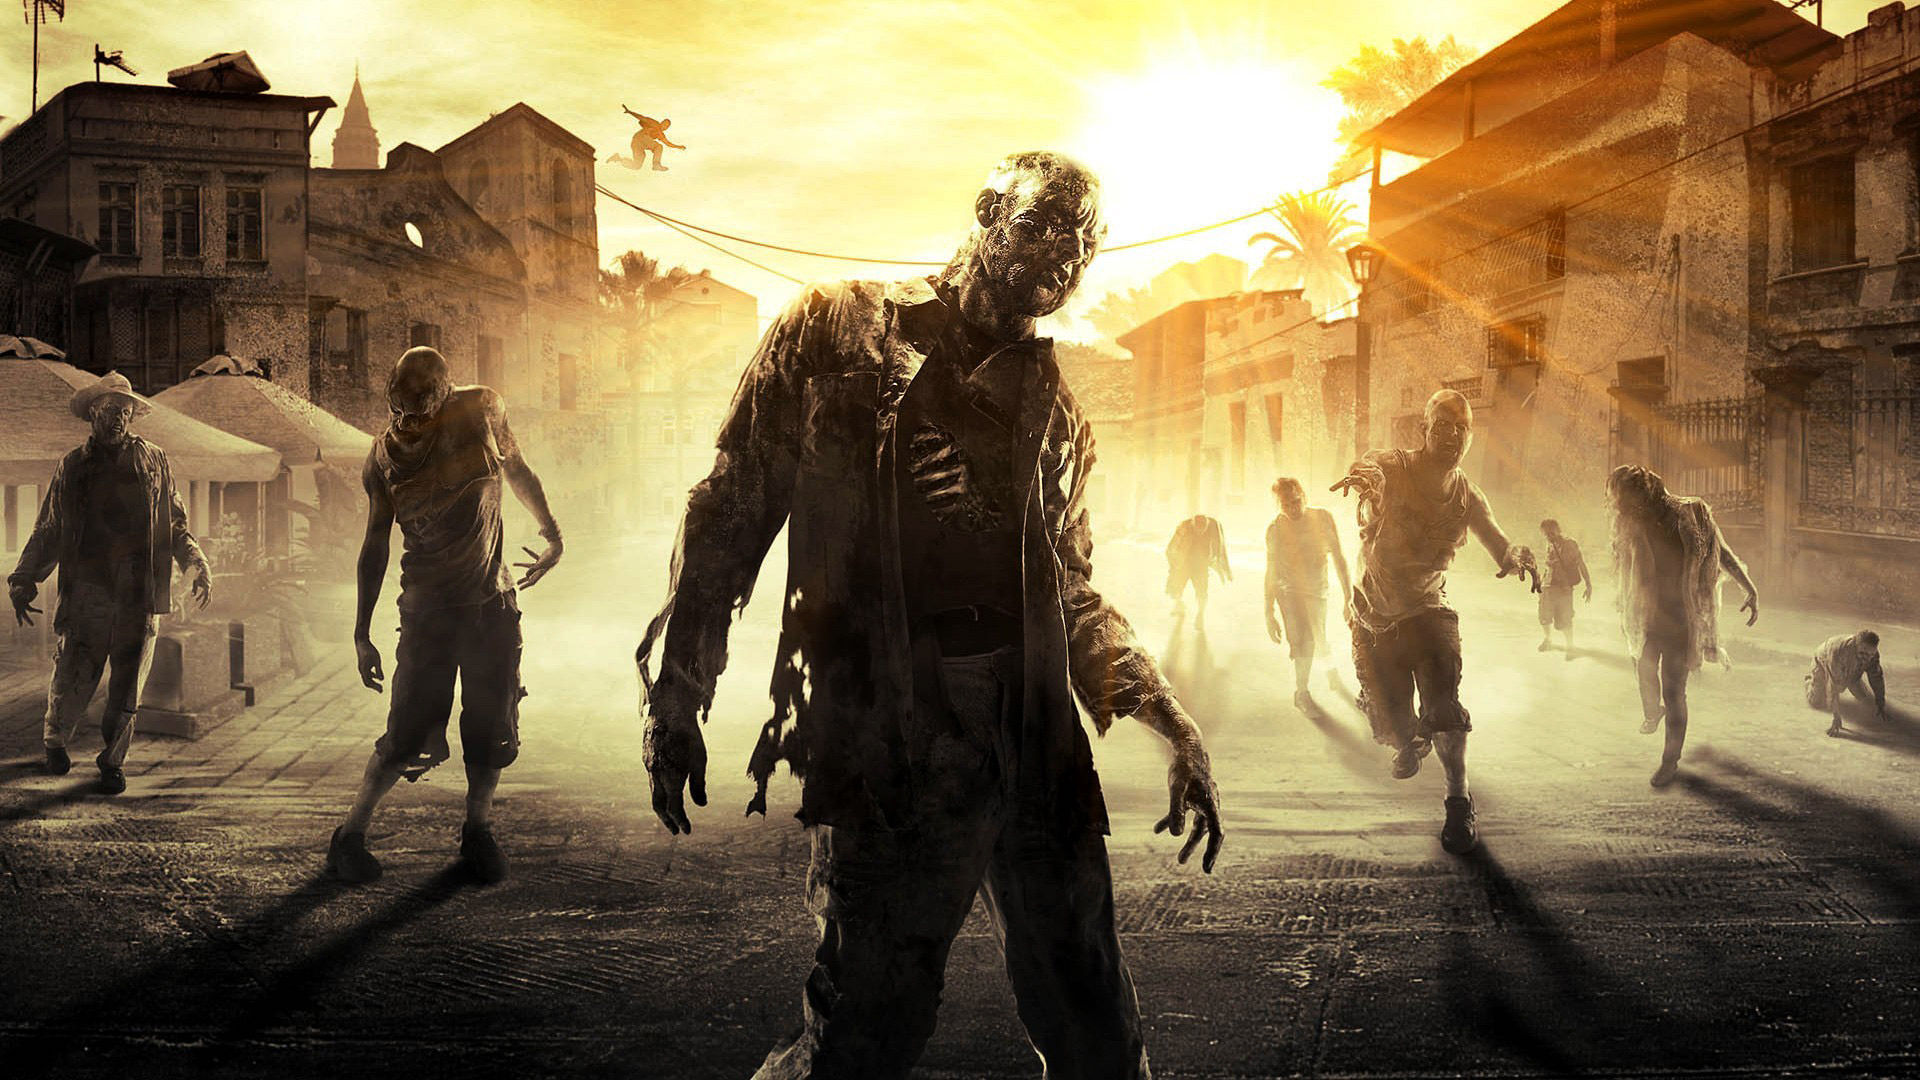 ¿Fin del mundo por una pandemia zombie?